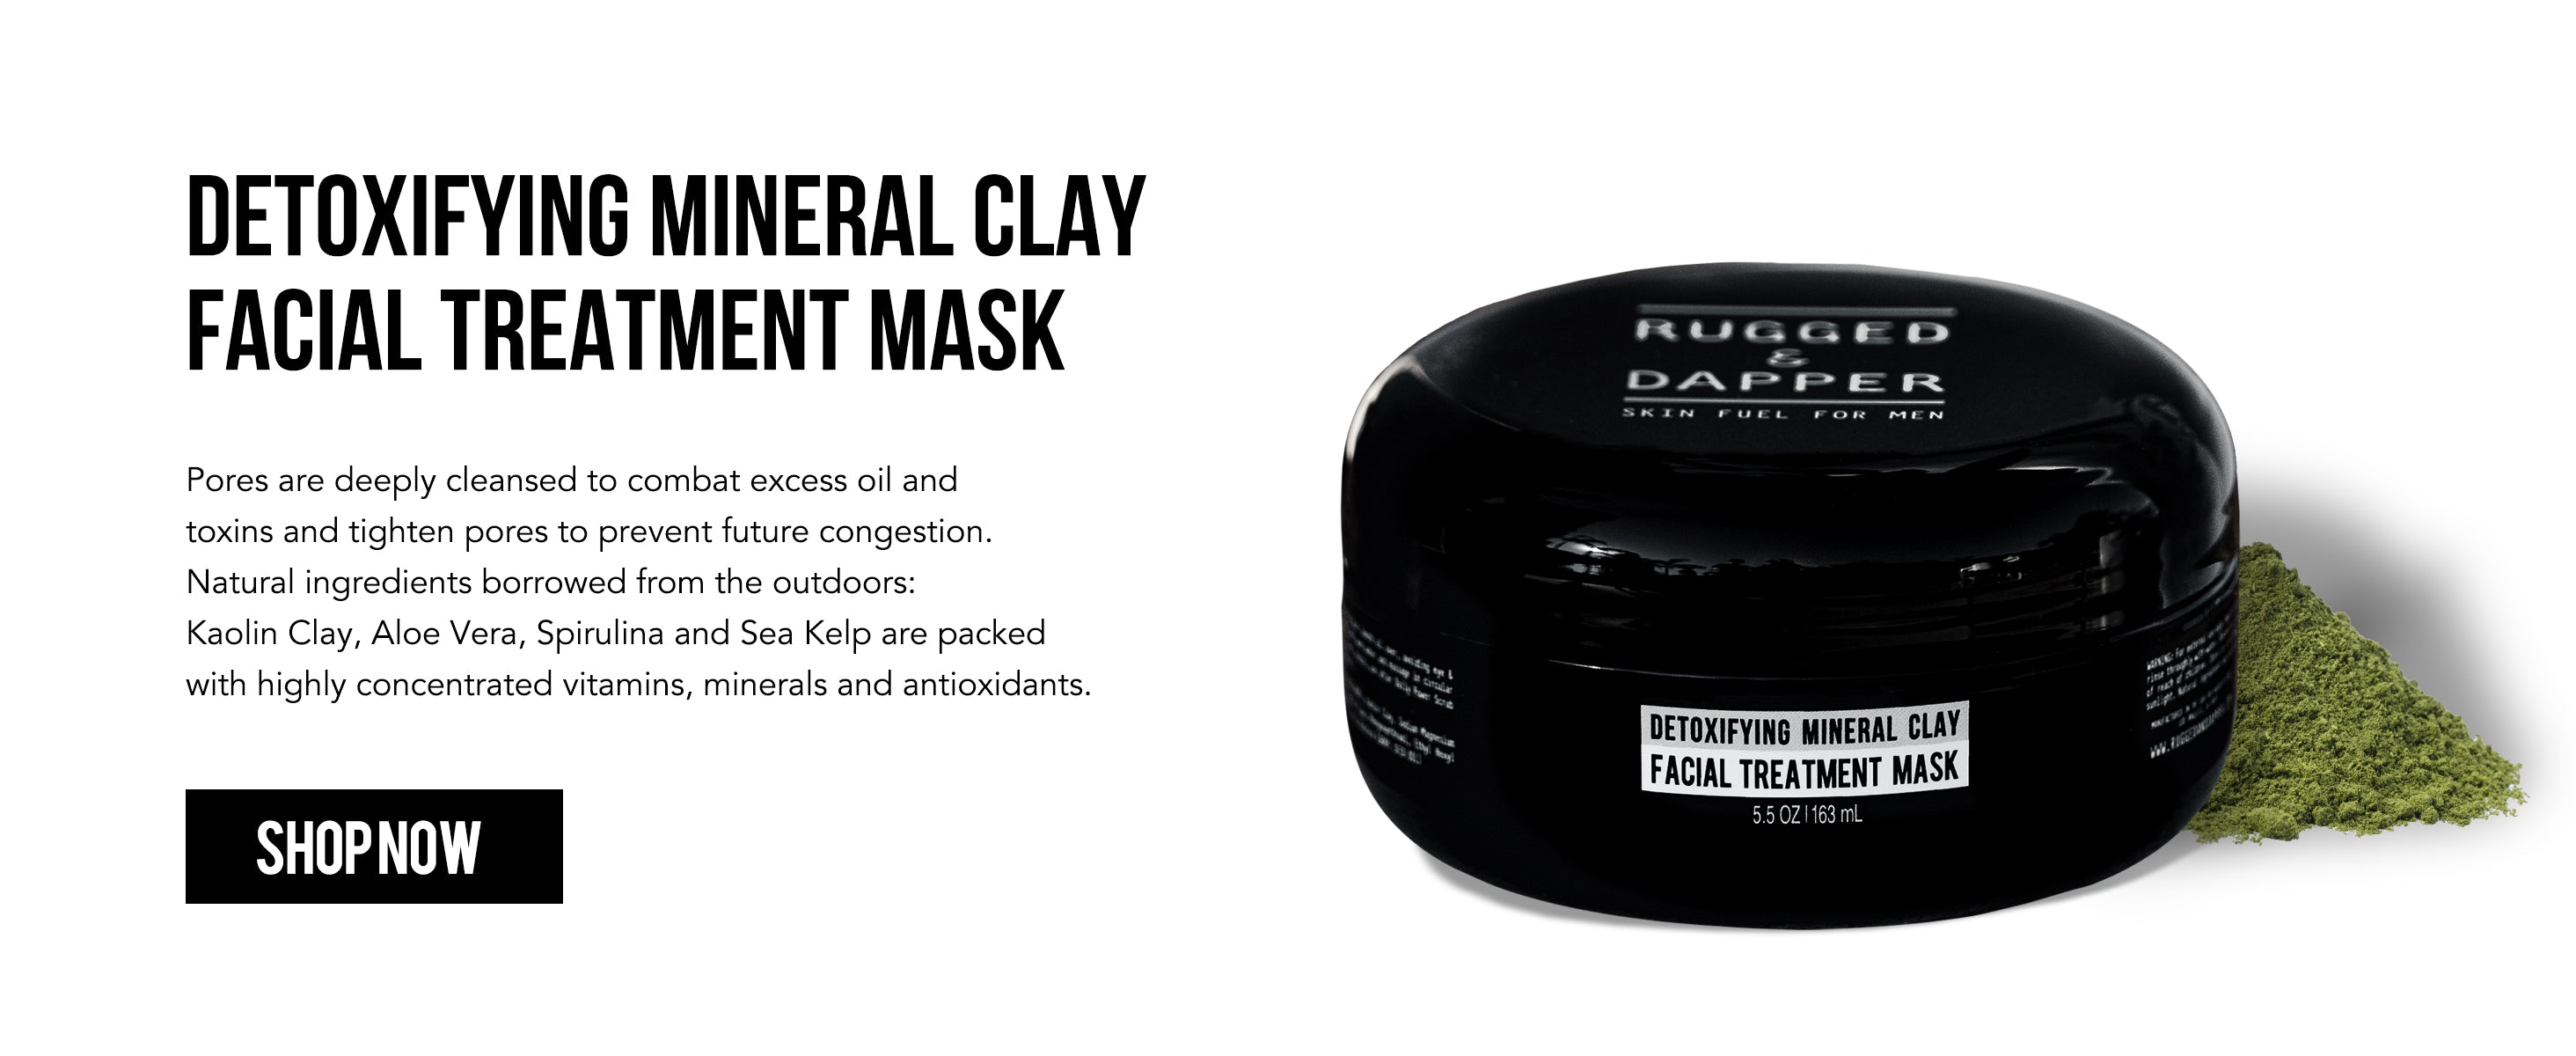 Detoxifying Mineral Clay Facial Treatment Mask